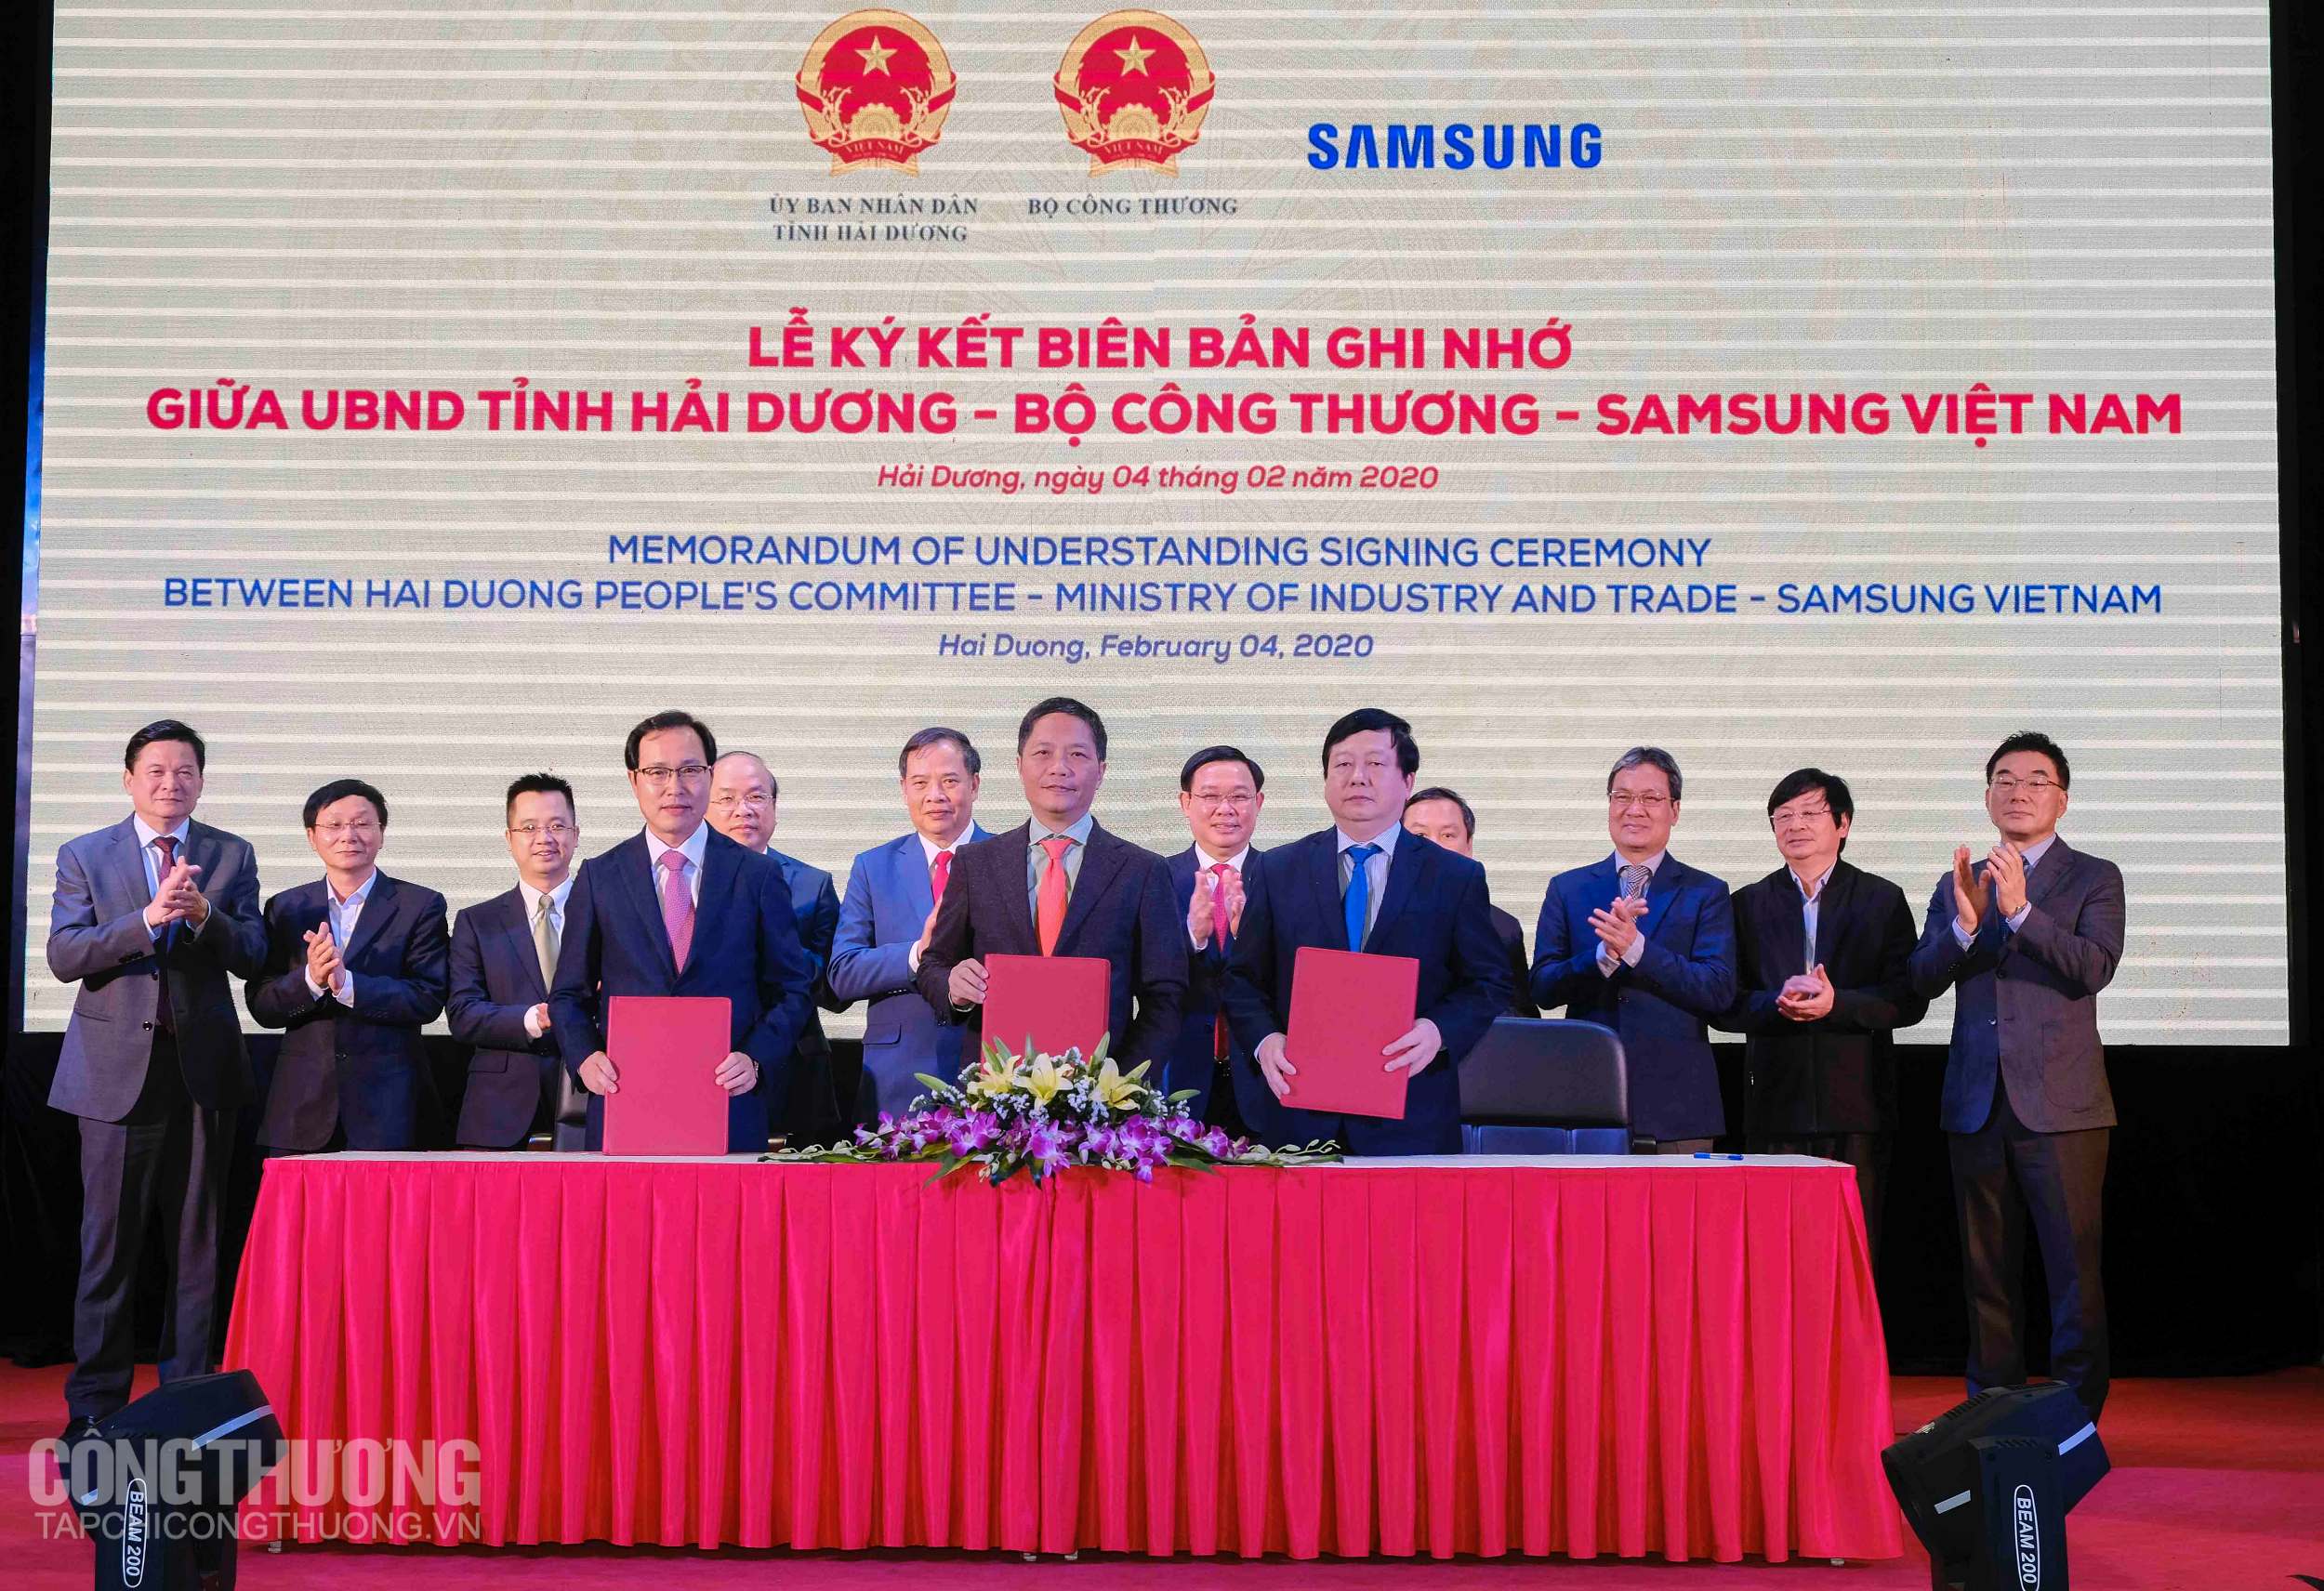 Lễ ký kết Biên bản ghi nhớ giữa Bộ Công Thương, Samsung Việt Nam và UBND tỉnh Hải Dương về phát triển công nghiệp hỗ trợ trên địa bàn tỉnh